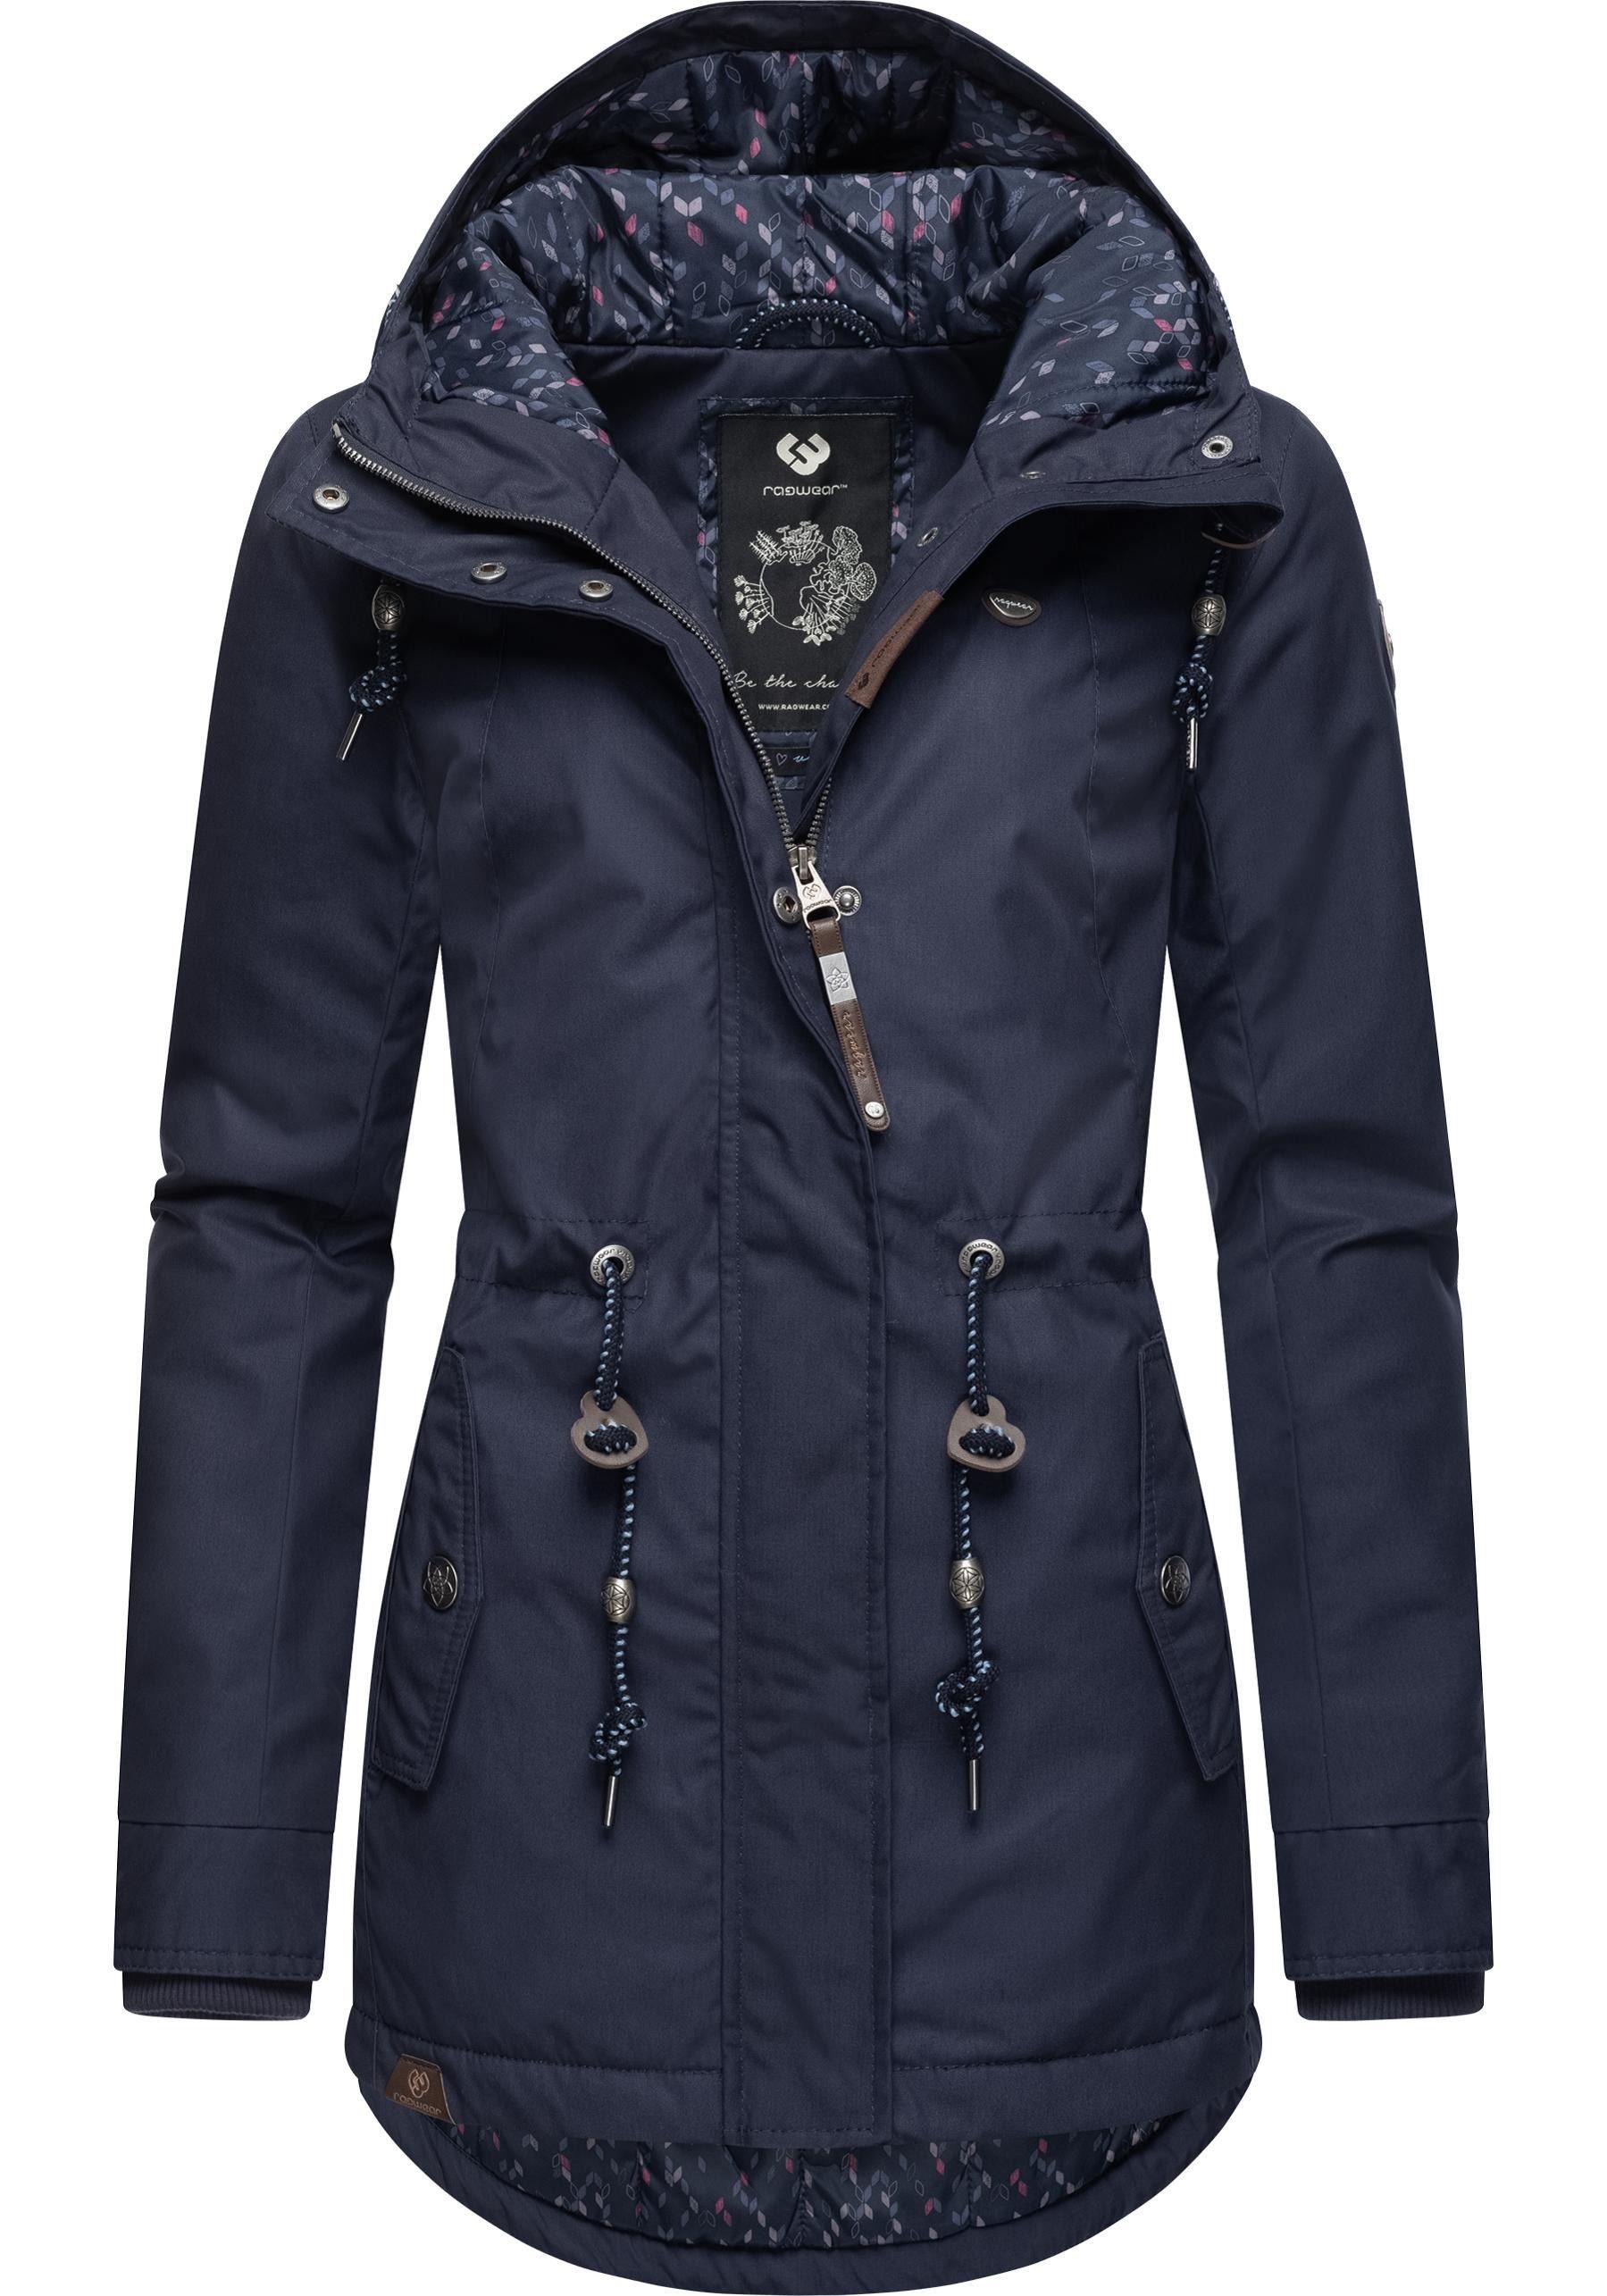 Jahreszeit stylischer die Winterjacke graublau kalte Winterparka für Label Ragwear Monadis Black